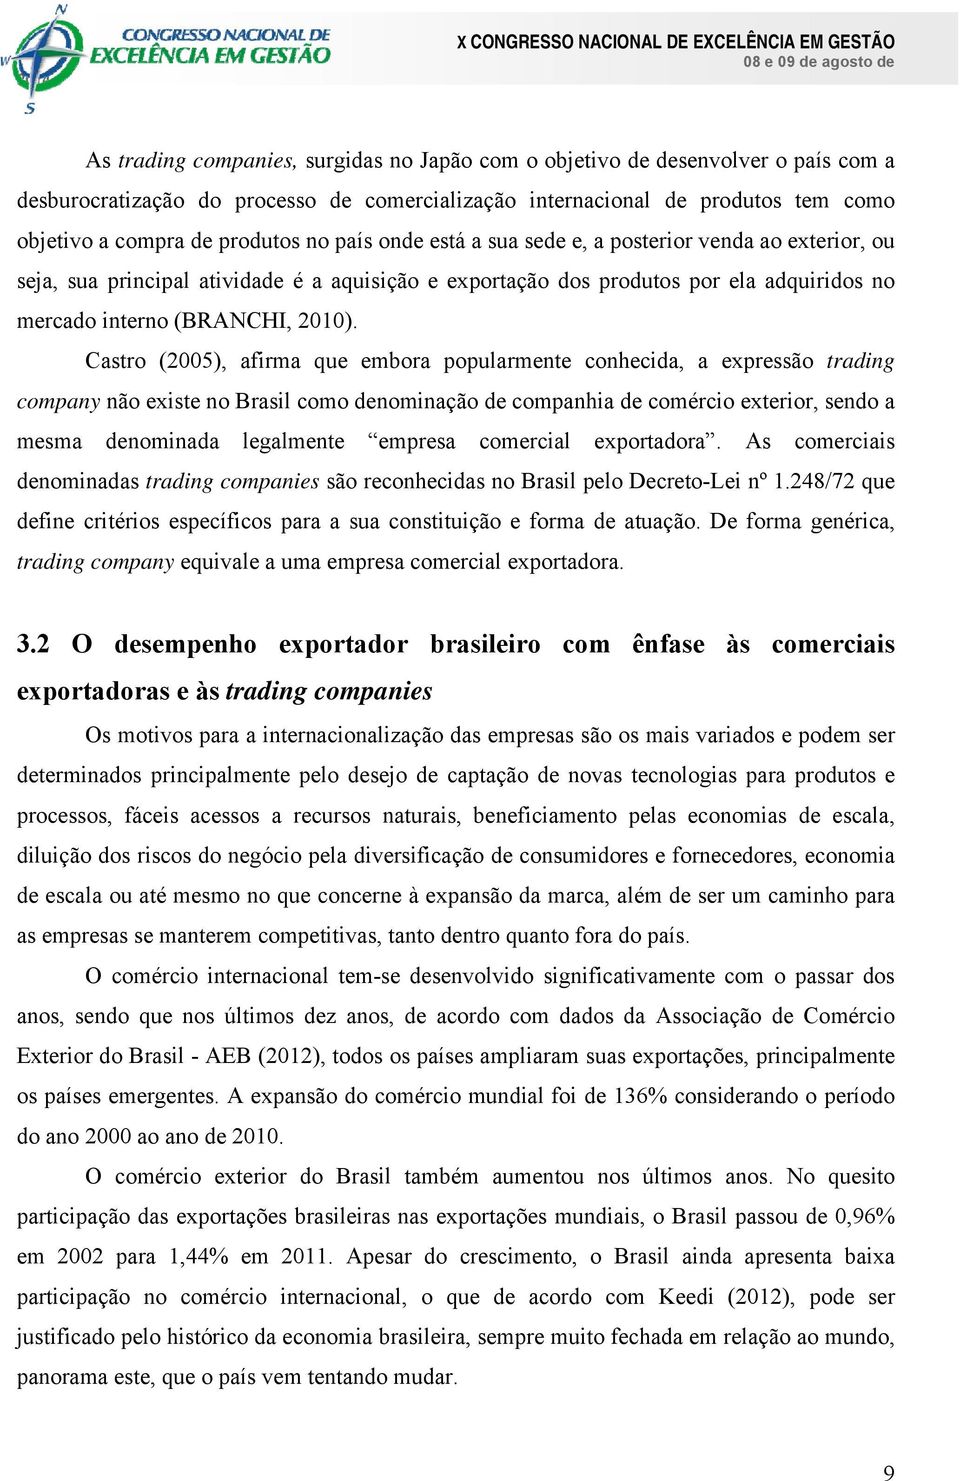 Castro (2005), afirma que embora popularmente conhecida, a expressão trading company não existe no Brasil como denominação de companhia de comércio exterior, sendo a mesma denominada legalmente